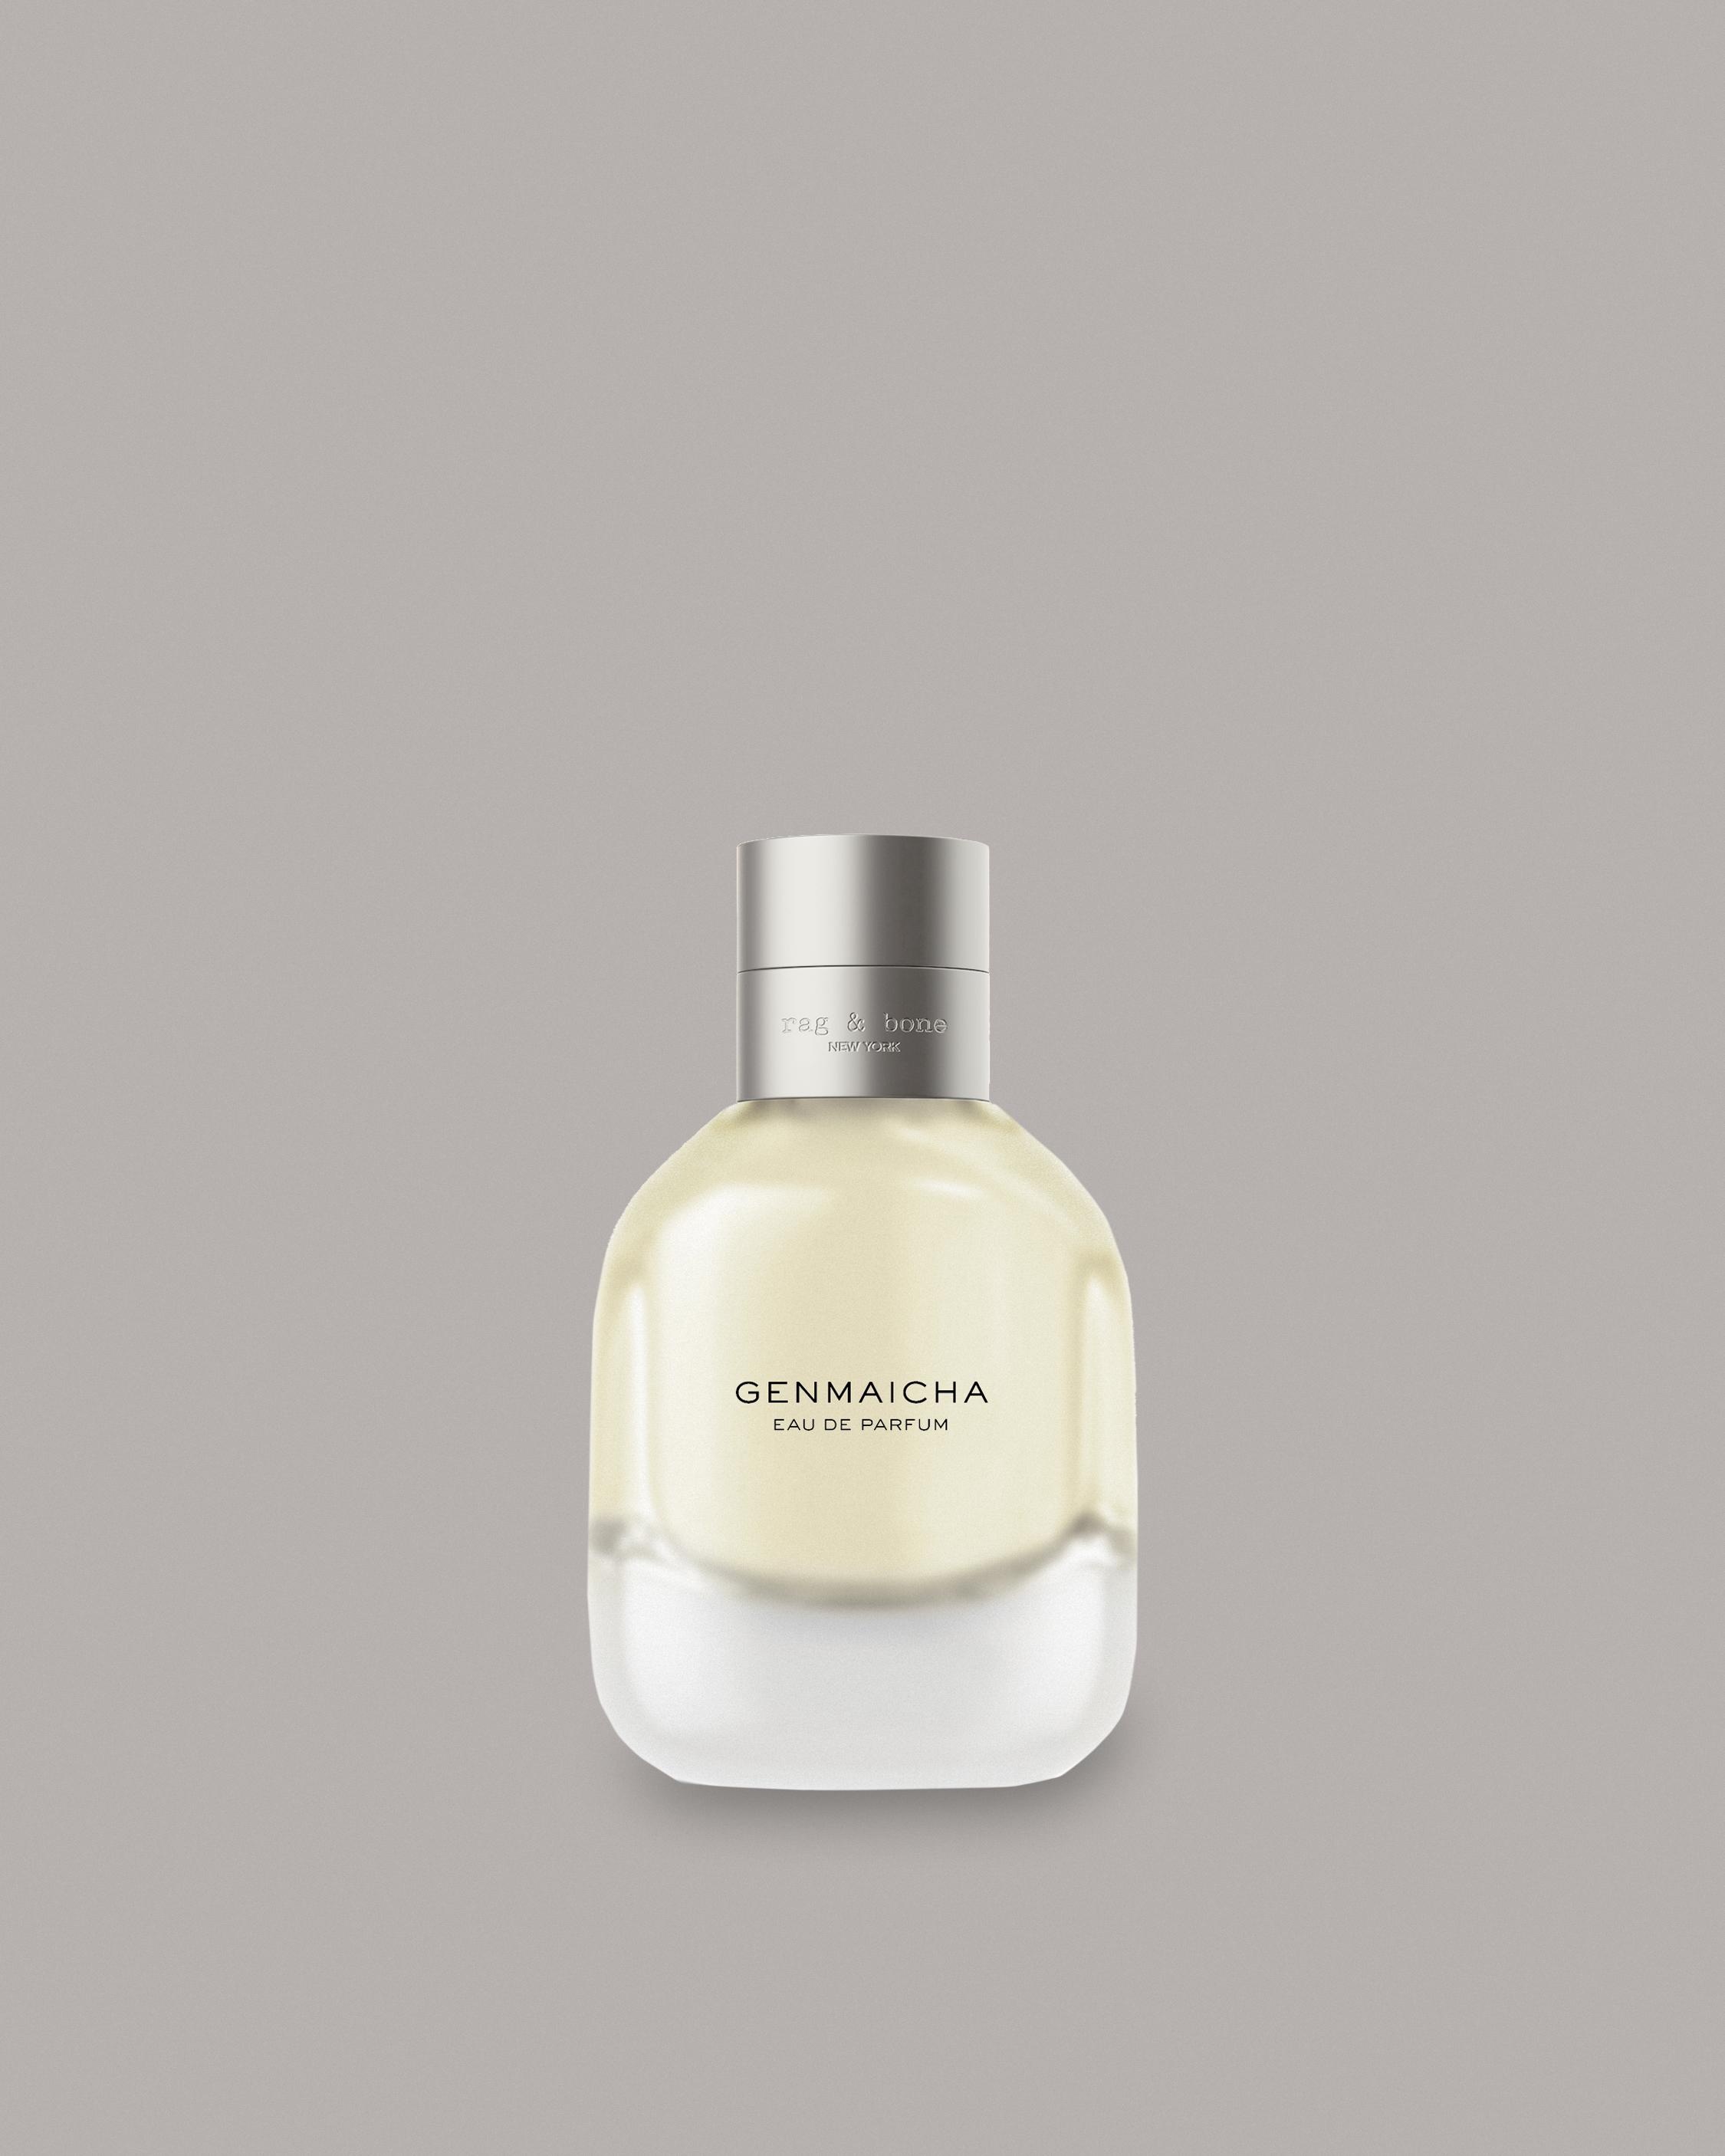 Genmaicha 50ml
Fragrance - 1